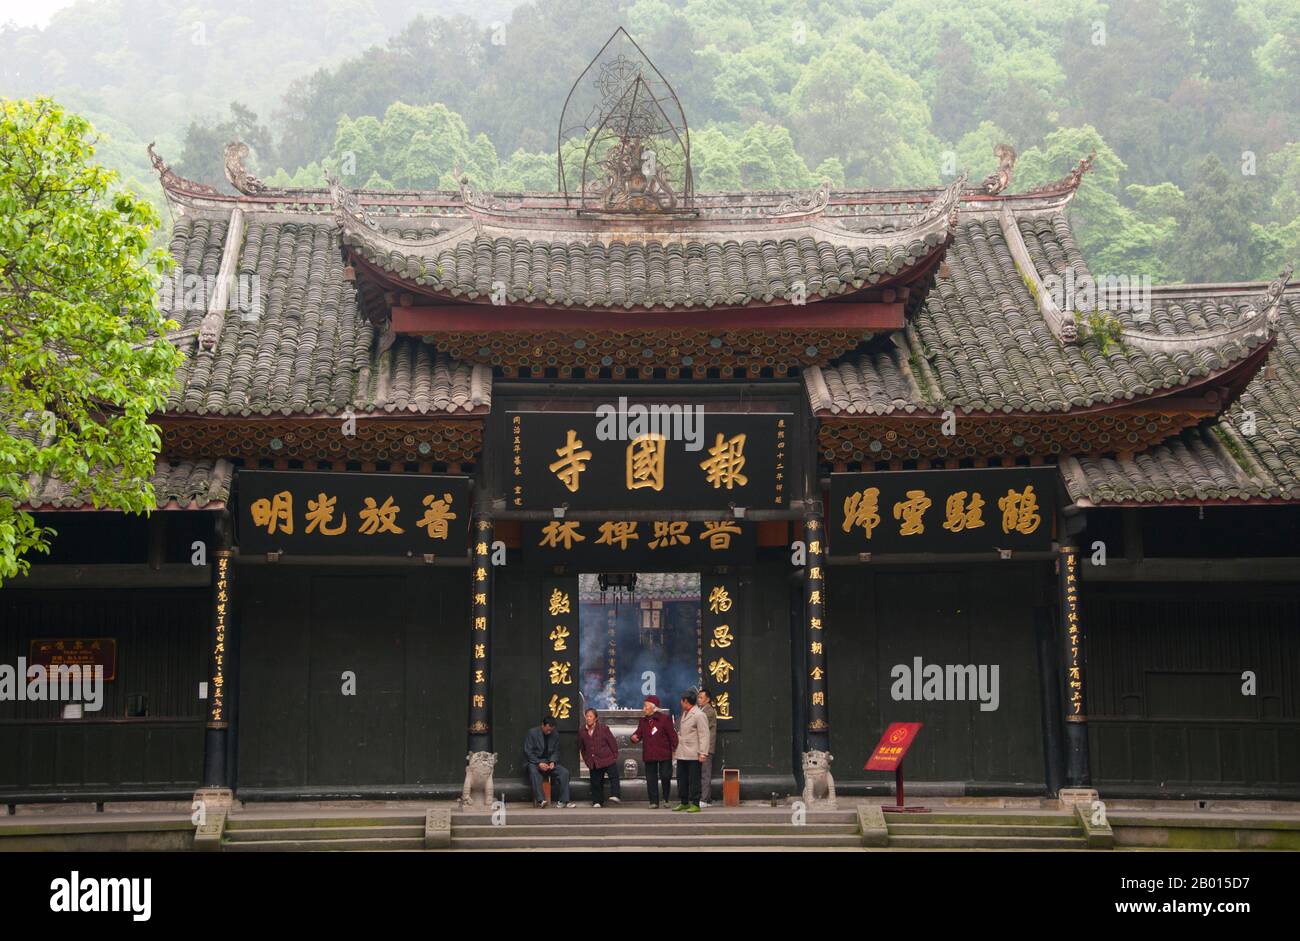 Cina: Ingresso a Baoguo si (Tempio della nazione dichiarante), ai piedi di Emeishan (Monte Emei), provincia di Sichuan. Baoguo si (Tempio della Nazione Declare), ai piedi del Monte Emei, fu costruito per la prima volta nel XVI secolo durante la Dinastia Ming (1368-1644). A 3,099 metri (10,167 piedi), Mt. Emei è la più alta delle quattro Sacre montagne buddiste della Cina. Il patrono bodhisattva di Emei è Samantabhadra, conosciuto in cinese come Puxian. Fonti del XVI e XVII secolo alludono alla pratica delle arti marziali nei monasteri del Monte Emei. Foto Stock